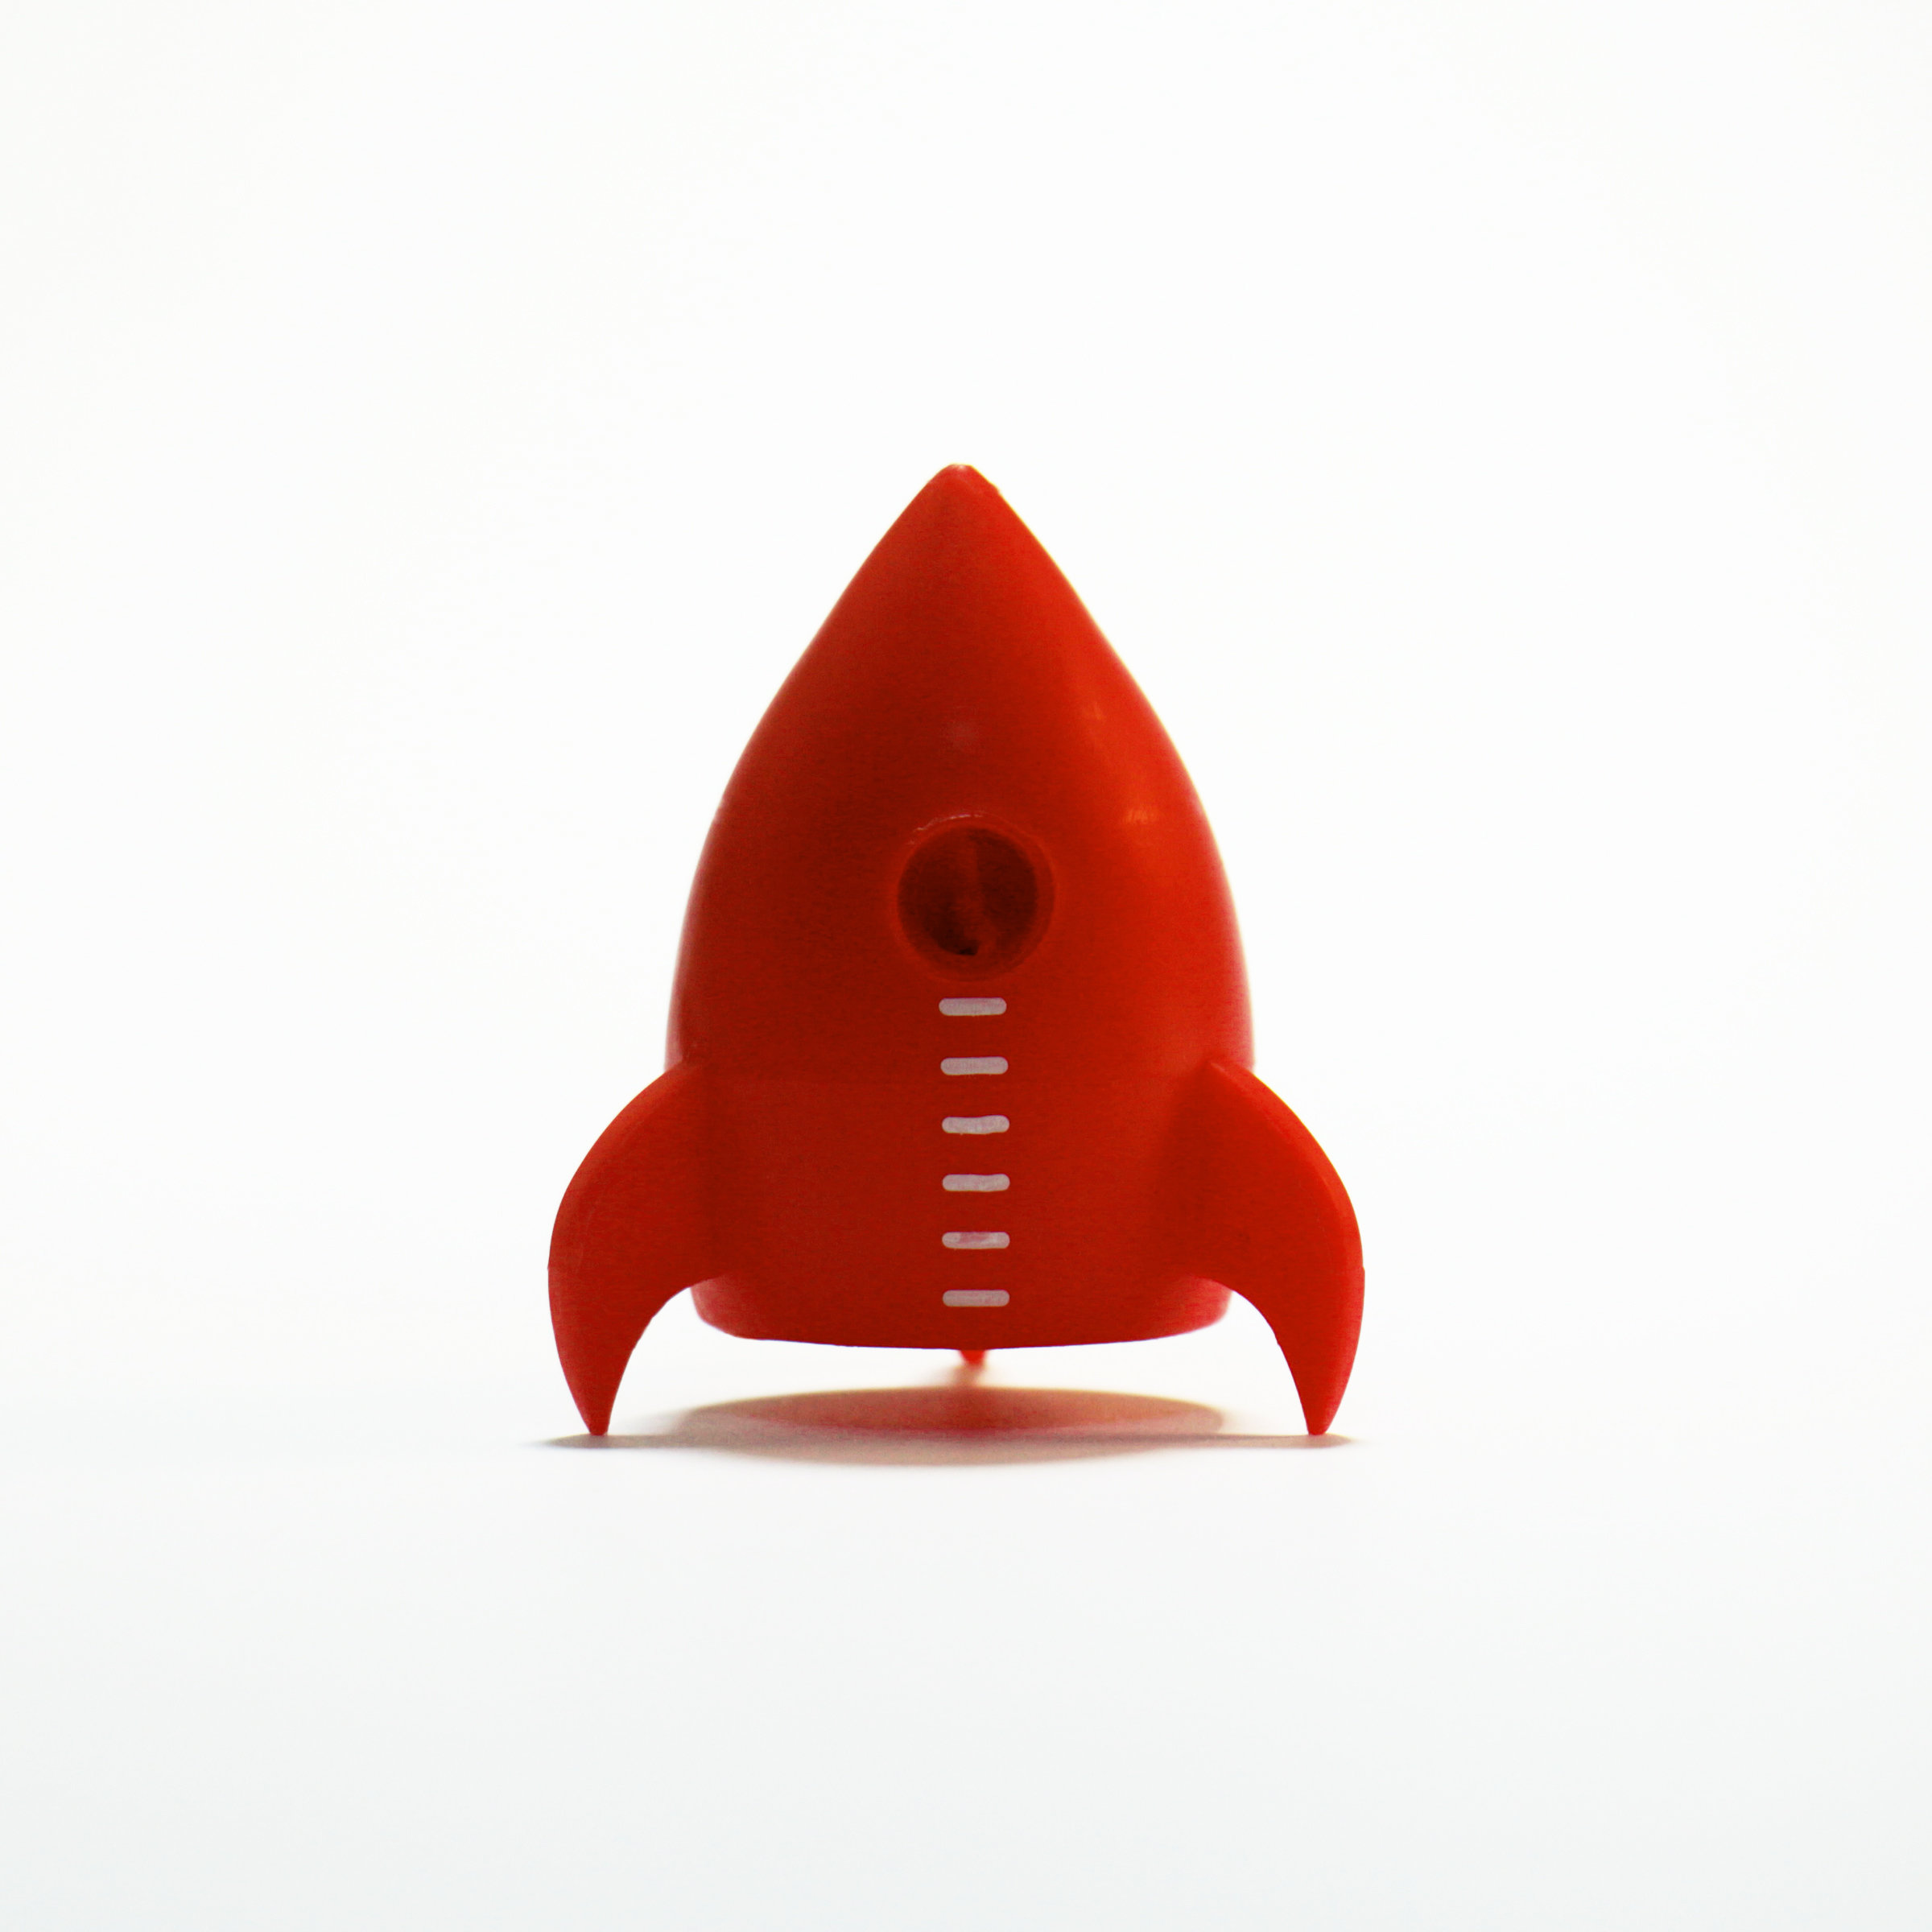 TinTin Rocket Pencil Sharpener